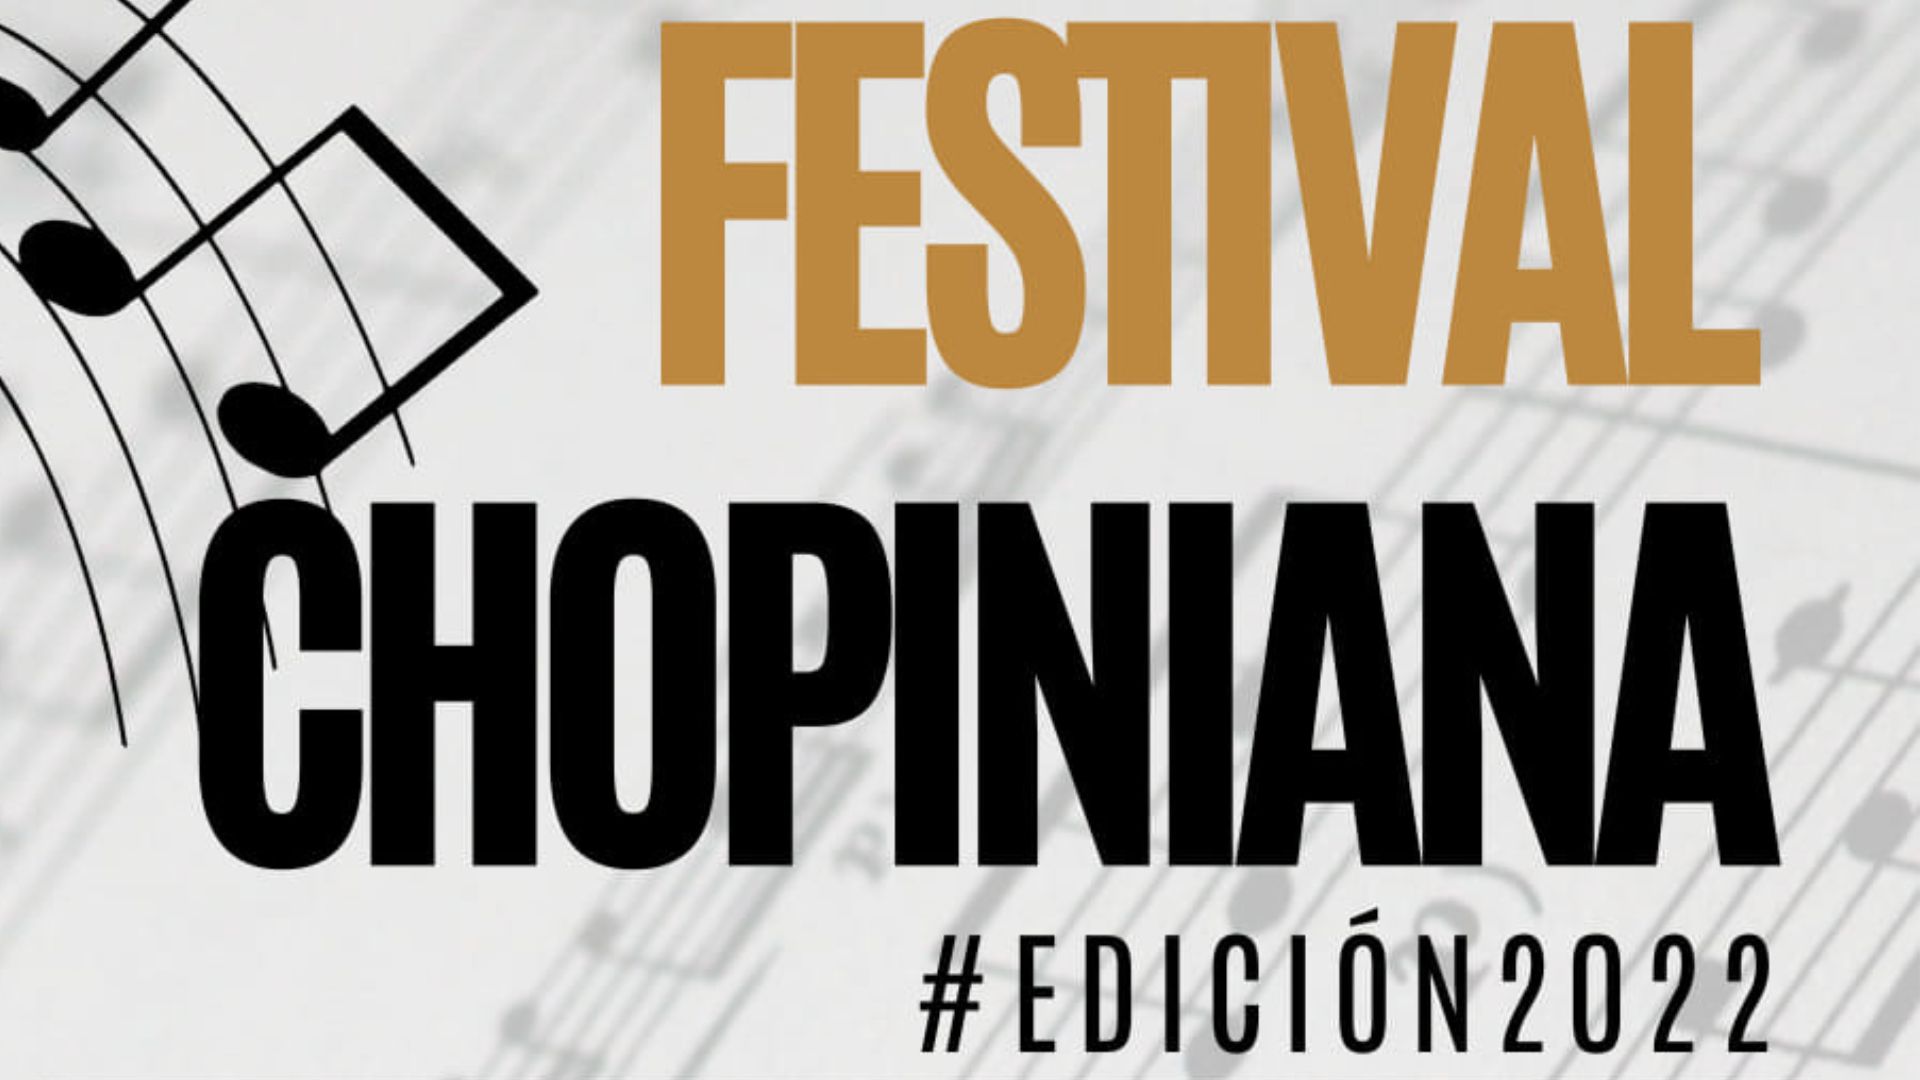 Nueva edición del festival chopiniana